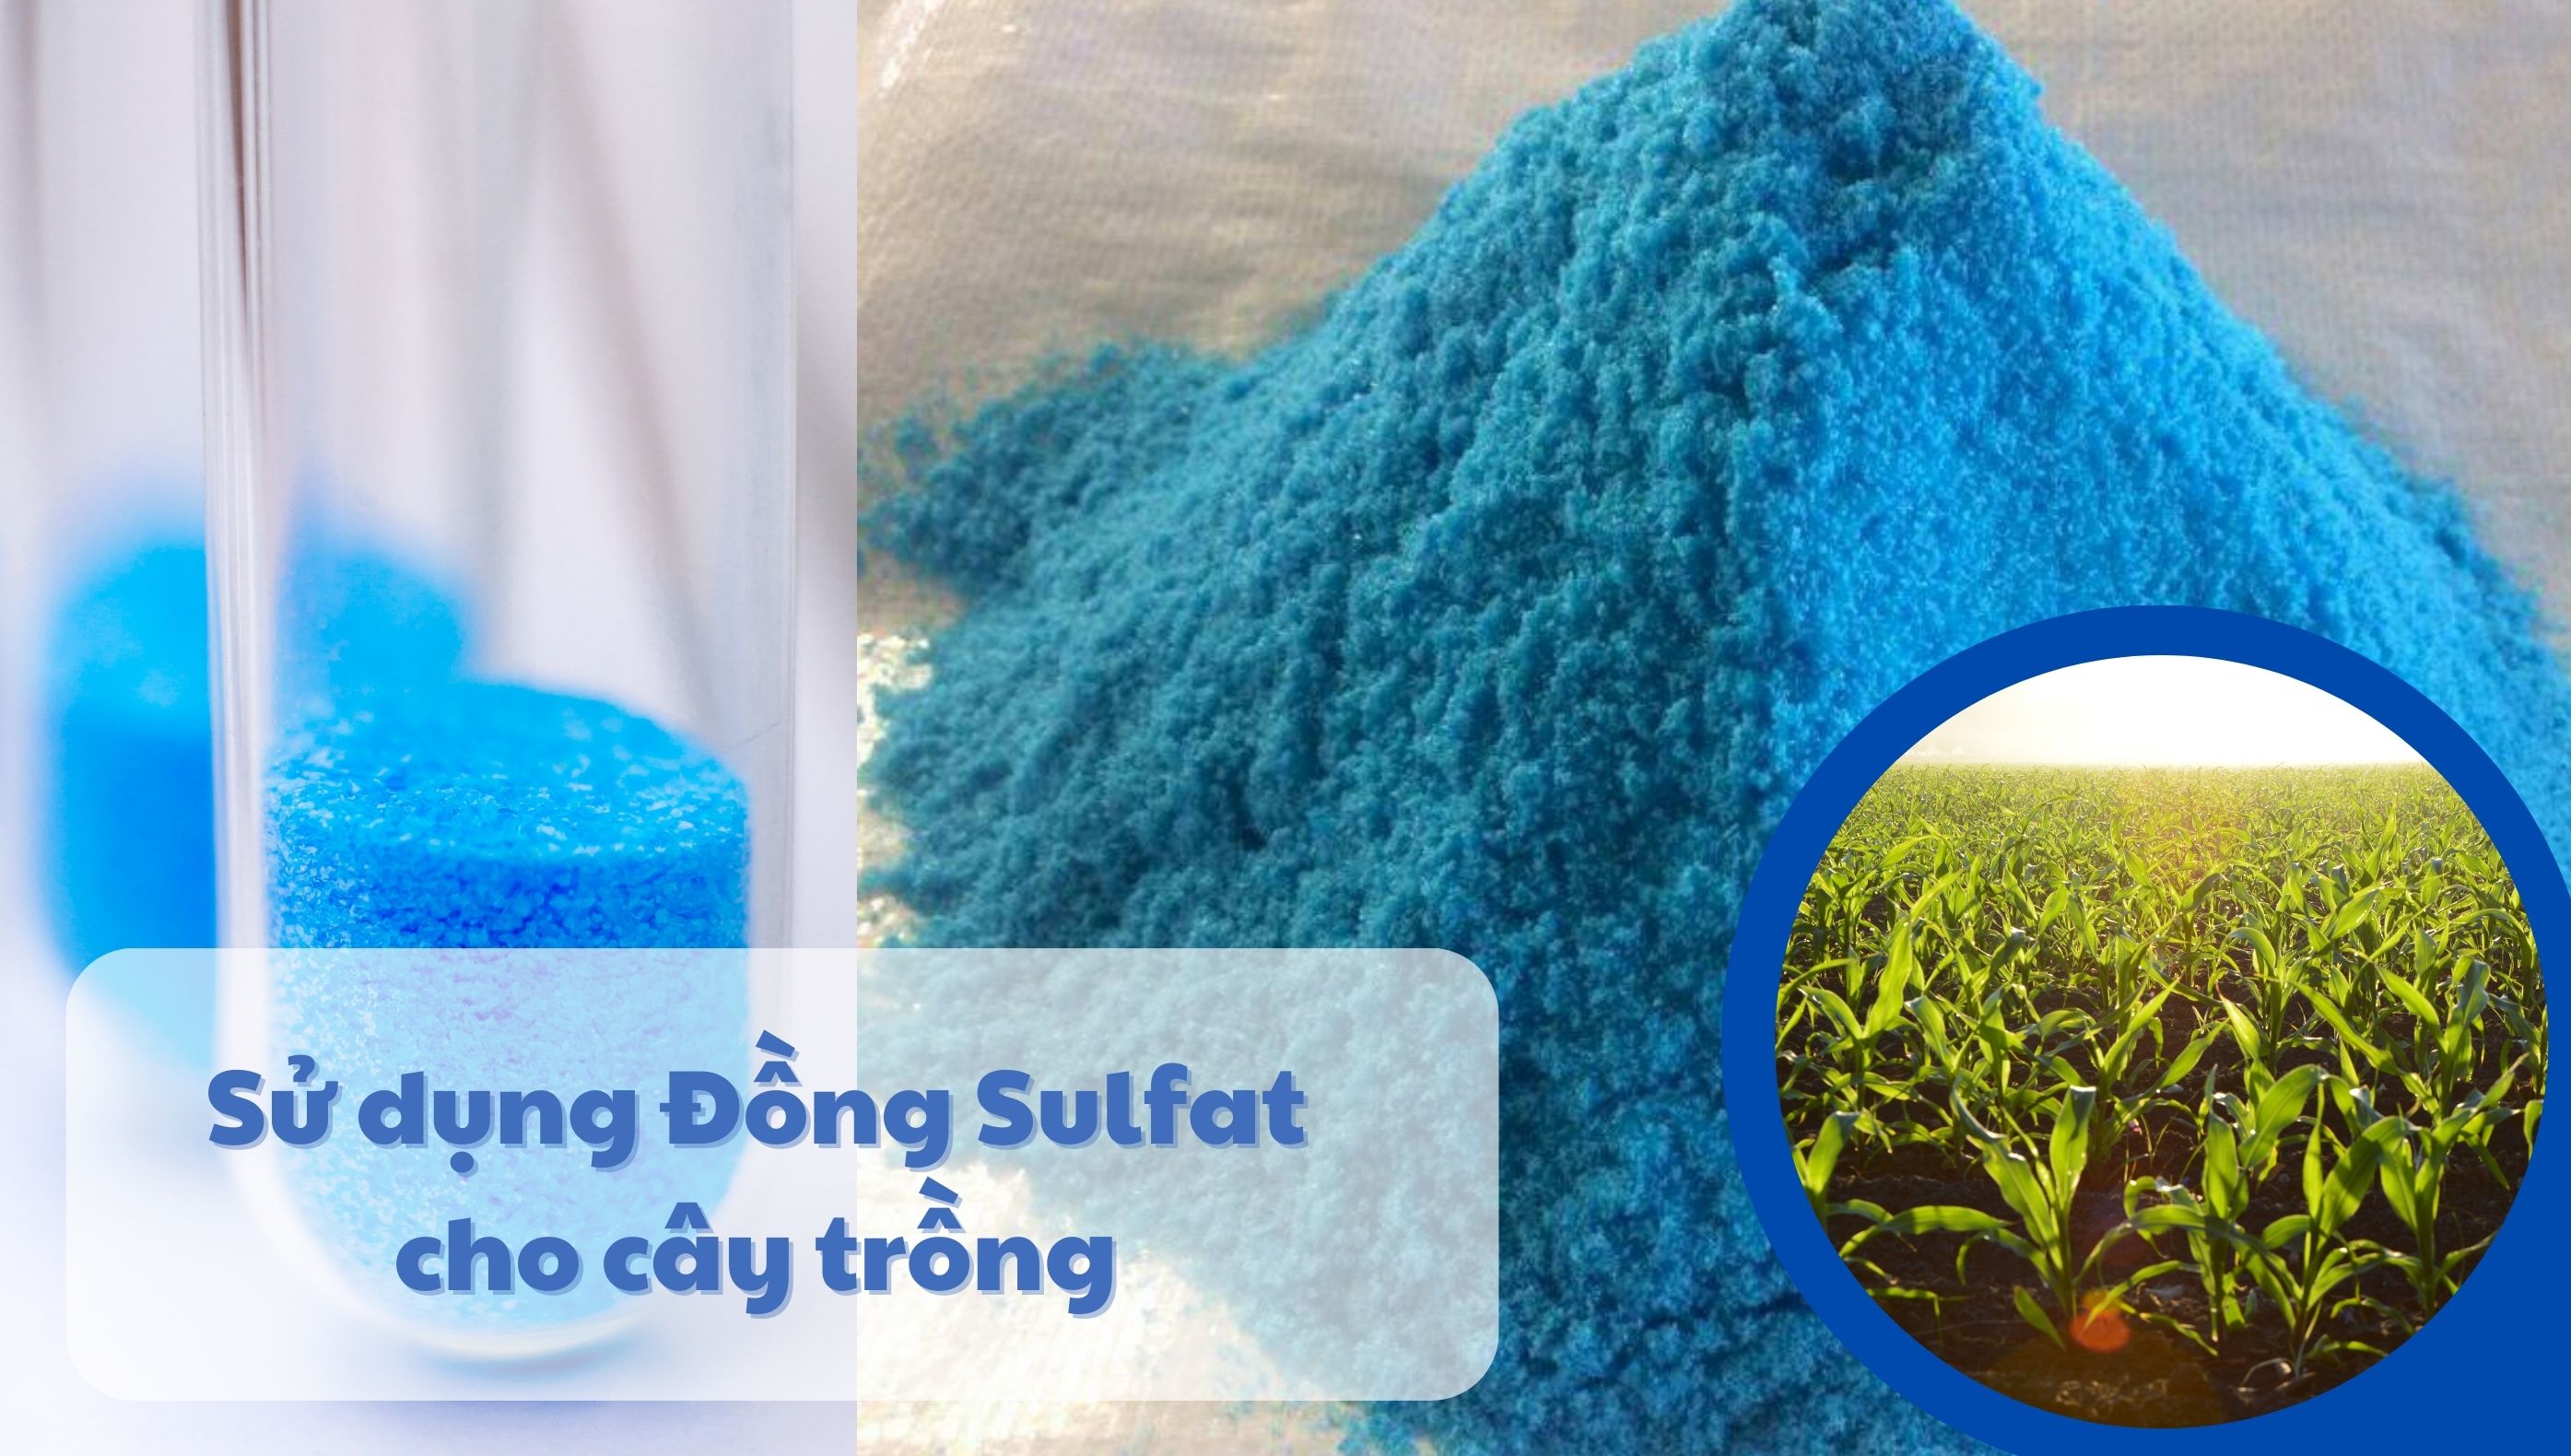 Sử dụng Đồng Sulfat cho cây trồng: Công dụng và liều lượng